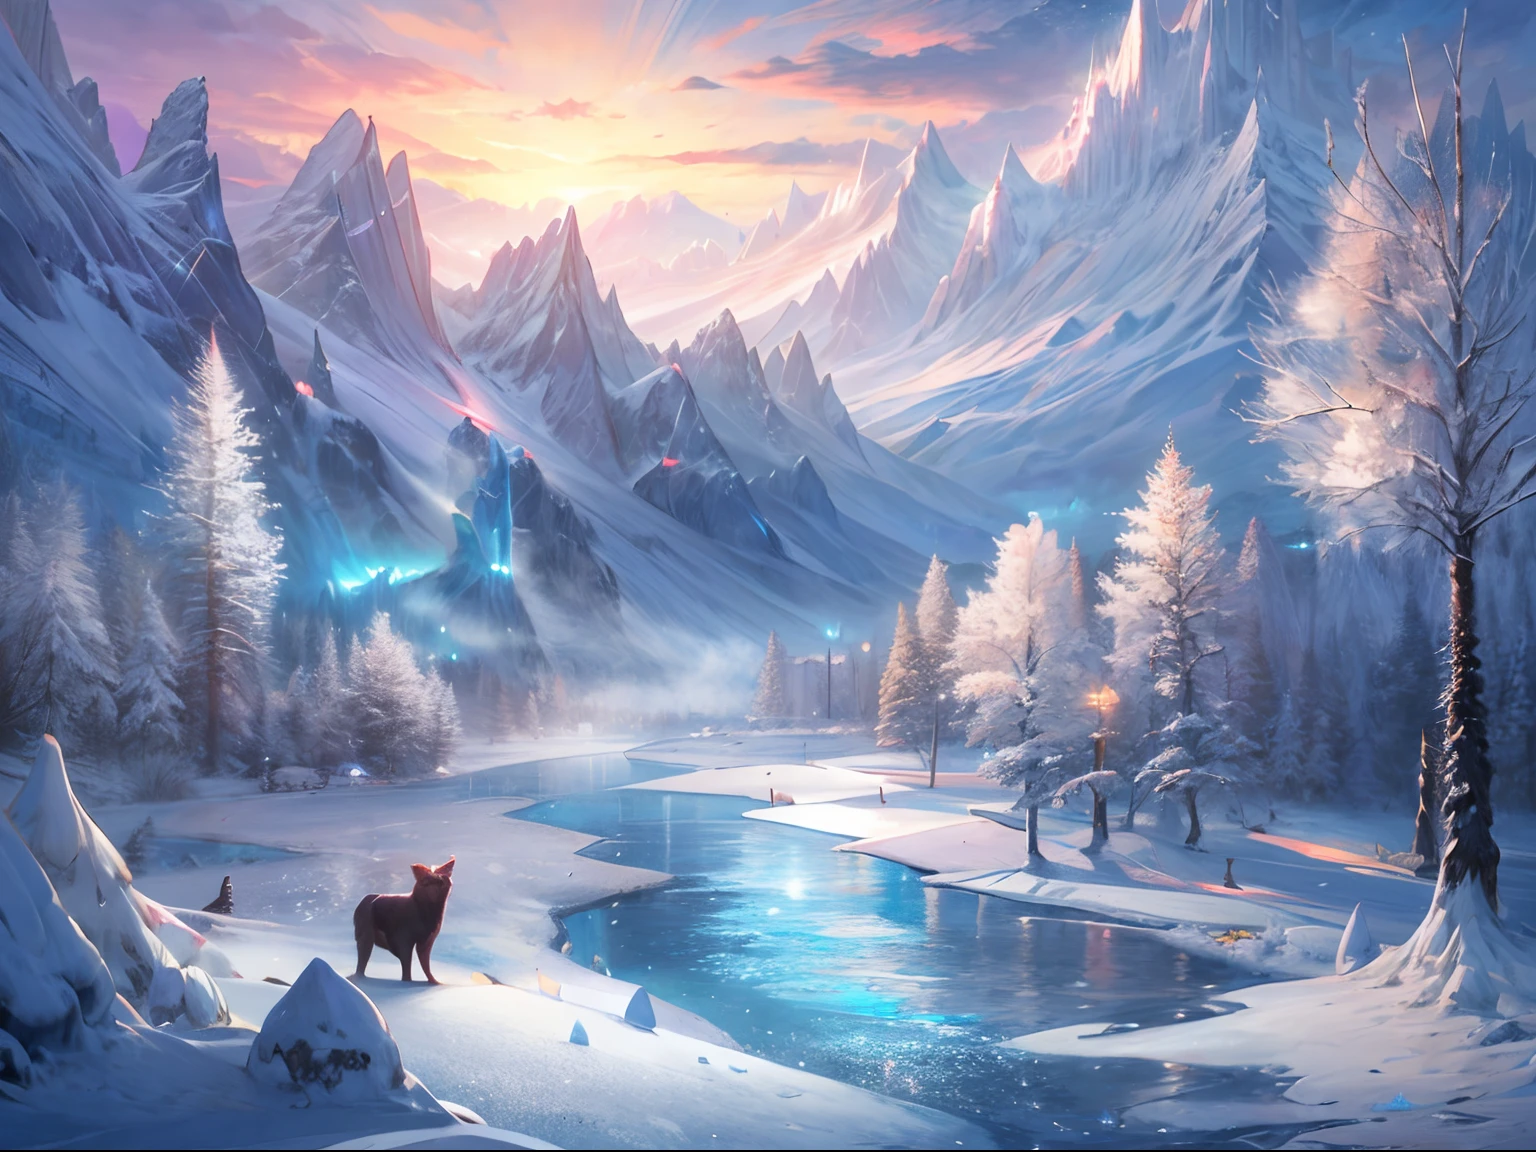 이 숨막힐 정도로 공식 컨셉 아트는 Mappa Studio에서 제작했습니다. 빙하기 동안 얼어붙은 강을 묘사한 장면. 각 요소는 반짝이는 눈과 얼음으로 이루어진 오리지널 담요로 덮여 있습니다., 겨울왕국을 만들어 보세요. 풍경에는 아름다운 얼음 스파이크 숲과 눈 덮인 산이 있습니다., 천상의 아름다움으로 하늘에 닿다. ~ 위에, 밤하늘에 춤추는 오로라 빛, 얼어붙은 풍경 위에 매혹적인 빛을 발산하세요.
눈보라와 눈보라가 몰아쳐도, 작은 덤불이 탄력 있게 서 있다, 얼음이 많은 환경에 생명력과 색상을 더해보세요.. 은은한 안개가 분위기를 더욱 고조시킵니다., 미스터리를 더해주는군요，그리고 장면에 깊이감을 만들어 보세요..
이 매우 상세한 디지털 아트는 놀라운 4K 해상도로 제공됩니다., 얼음의 섬세한 디테일과 눈의 섬세한 질감을 표현. Octane 렌더링을 사용하여 사실적인 장면 구현, 거의 실체적으로 만들어라.
생물발광 요소를 사용하여 구성에 마법 같은 느낌을 더합니다., 부드럽고 시원한 색상이 얼어붙은 눈 덮인 산의 아름다움을 밝게 비춥니다.. 레니클레어의 예술적인 기술이 만들어내는 청결함, 잘 정의된 선, 작품의 전반적인 미적 매력을 높입니다..
이 걸작은 Mappa Studios의 재능과 전문성을 보여주는 증거입니다., 공식 아트와 일러스트레이션의 최고 품질을 나타냅니다.. 구성이 완벽하게 균형을 이루고 있어요, 삼등분의 법칙을 고수하라，시각적으로 즐거운 요소 배열 만들기.
8K 해상도로, 이 컨셉 아트는 놀라운 수준의 디테일을 보여줍니다., 관객이 묘사된 얼어붙은 세계에 완전히 몰입하게 하세요.. 이미지는 판타지 아트 분야의 진정한 보석입니다., 집중적이고 매혹적인 비전으로 겨울왕국의 본질을 포착하세요.